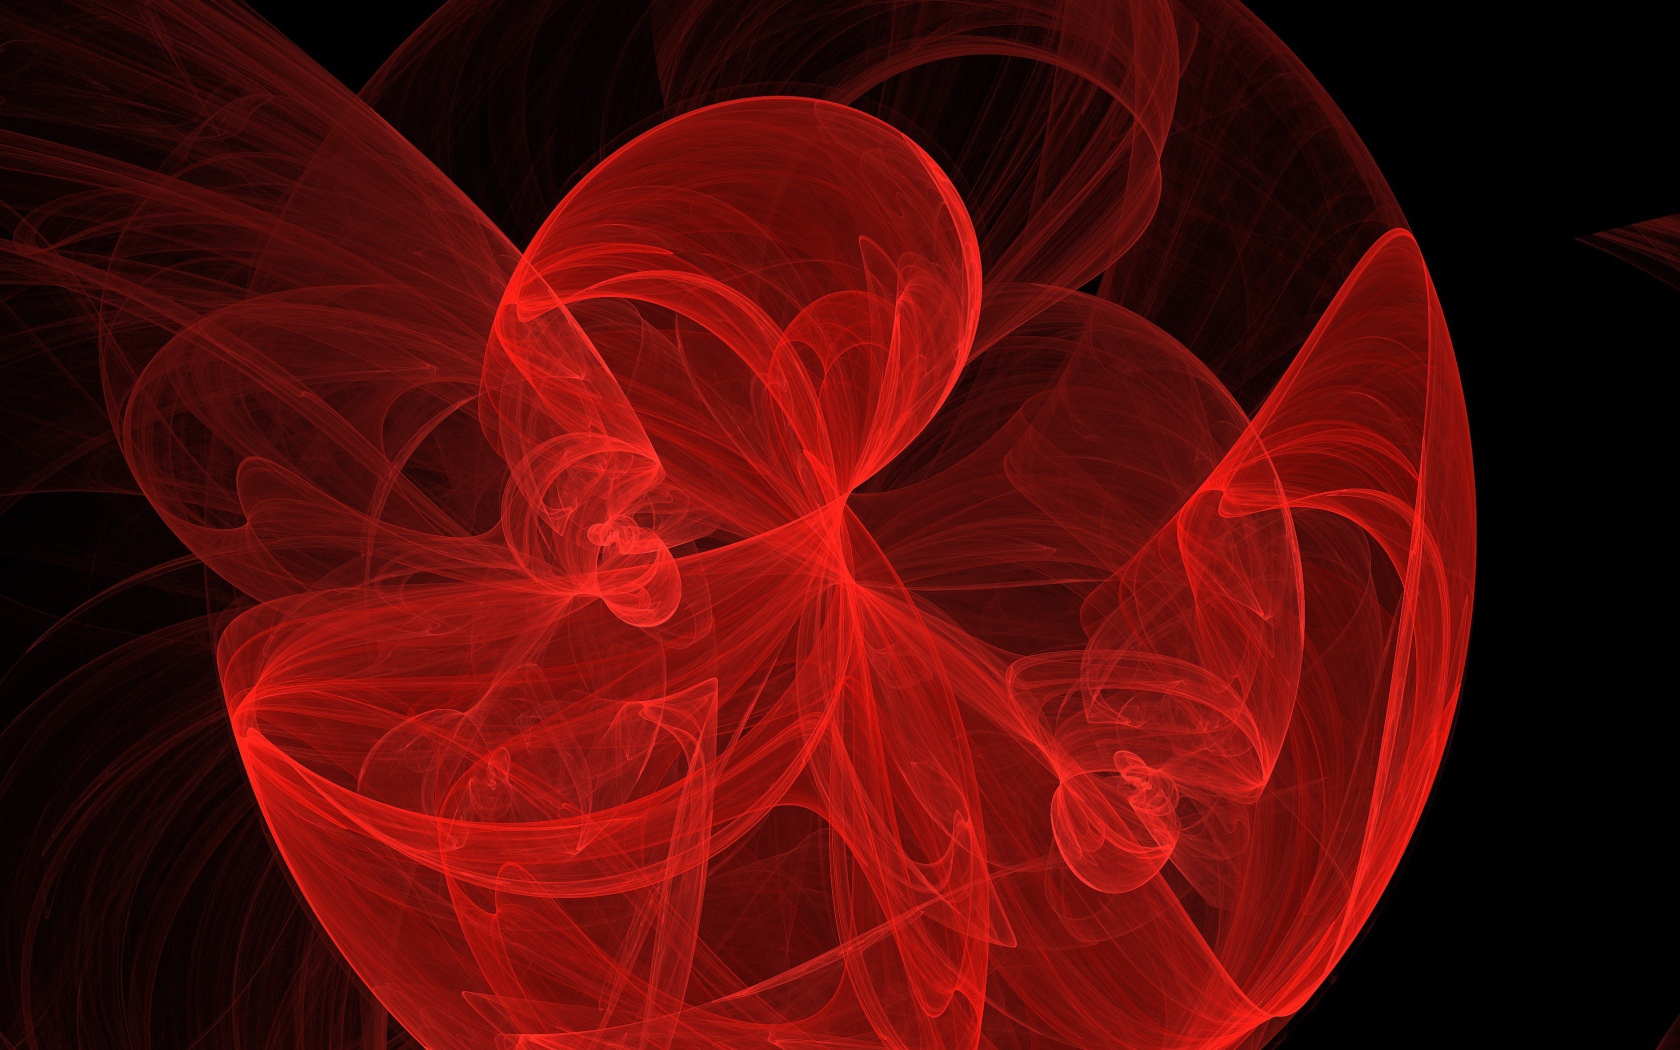 Red fractal patterned pattern on a black background.